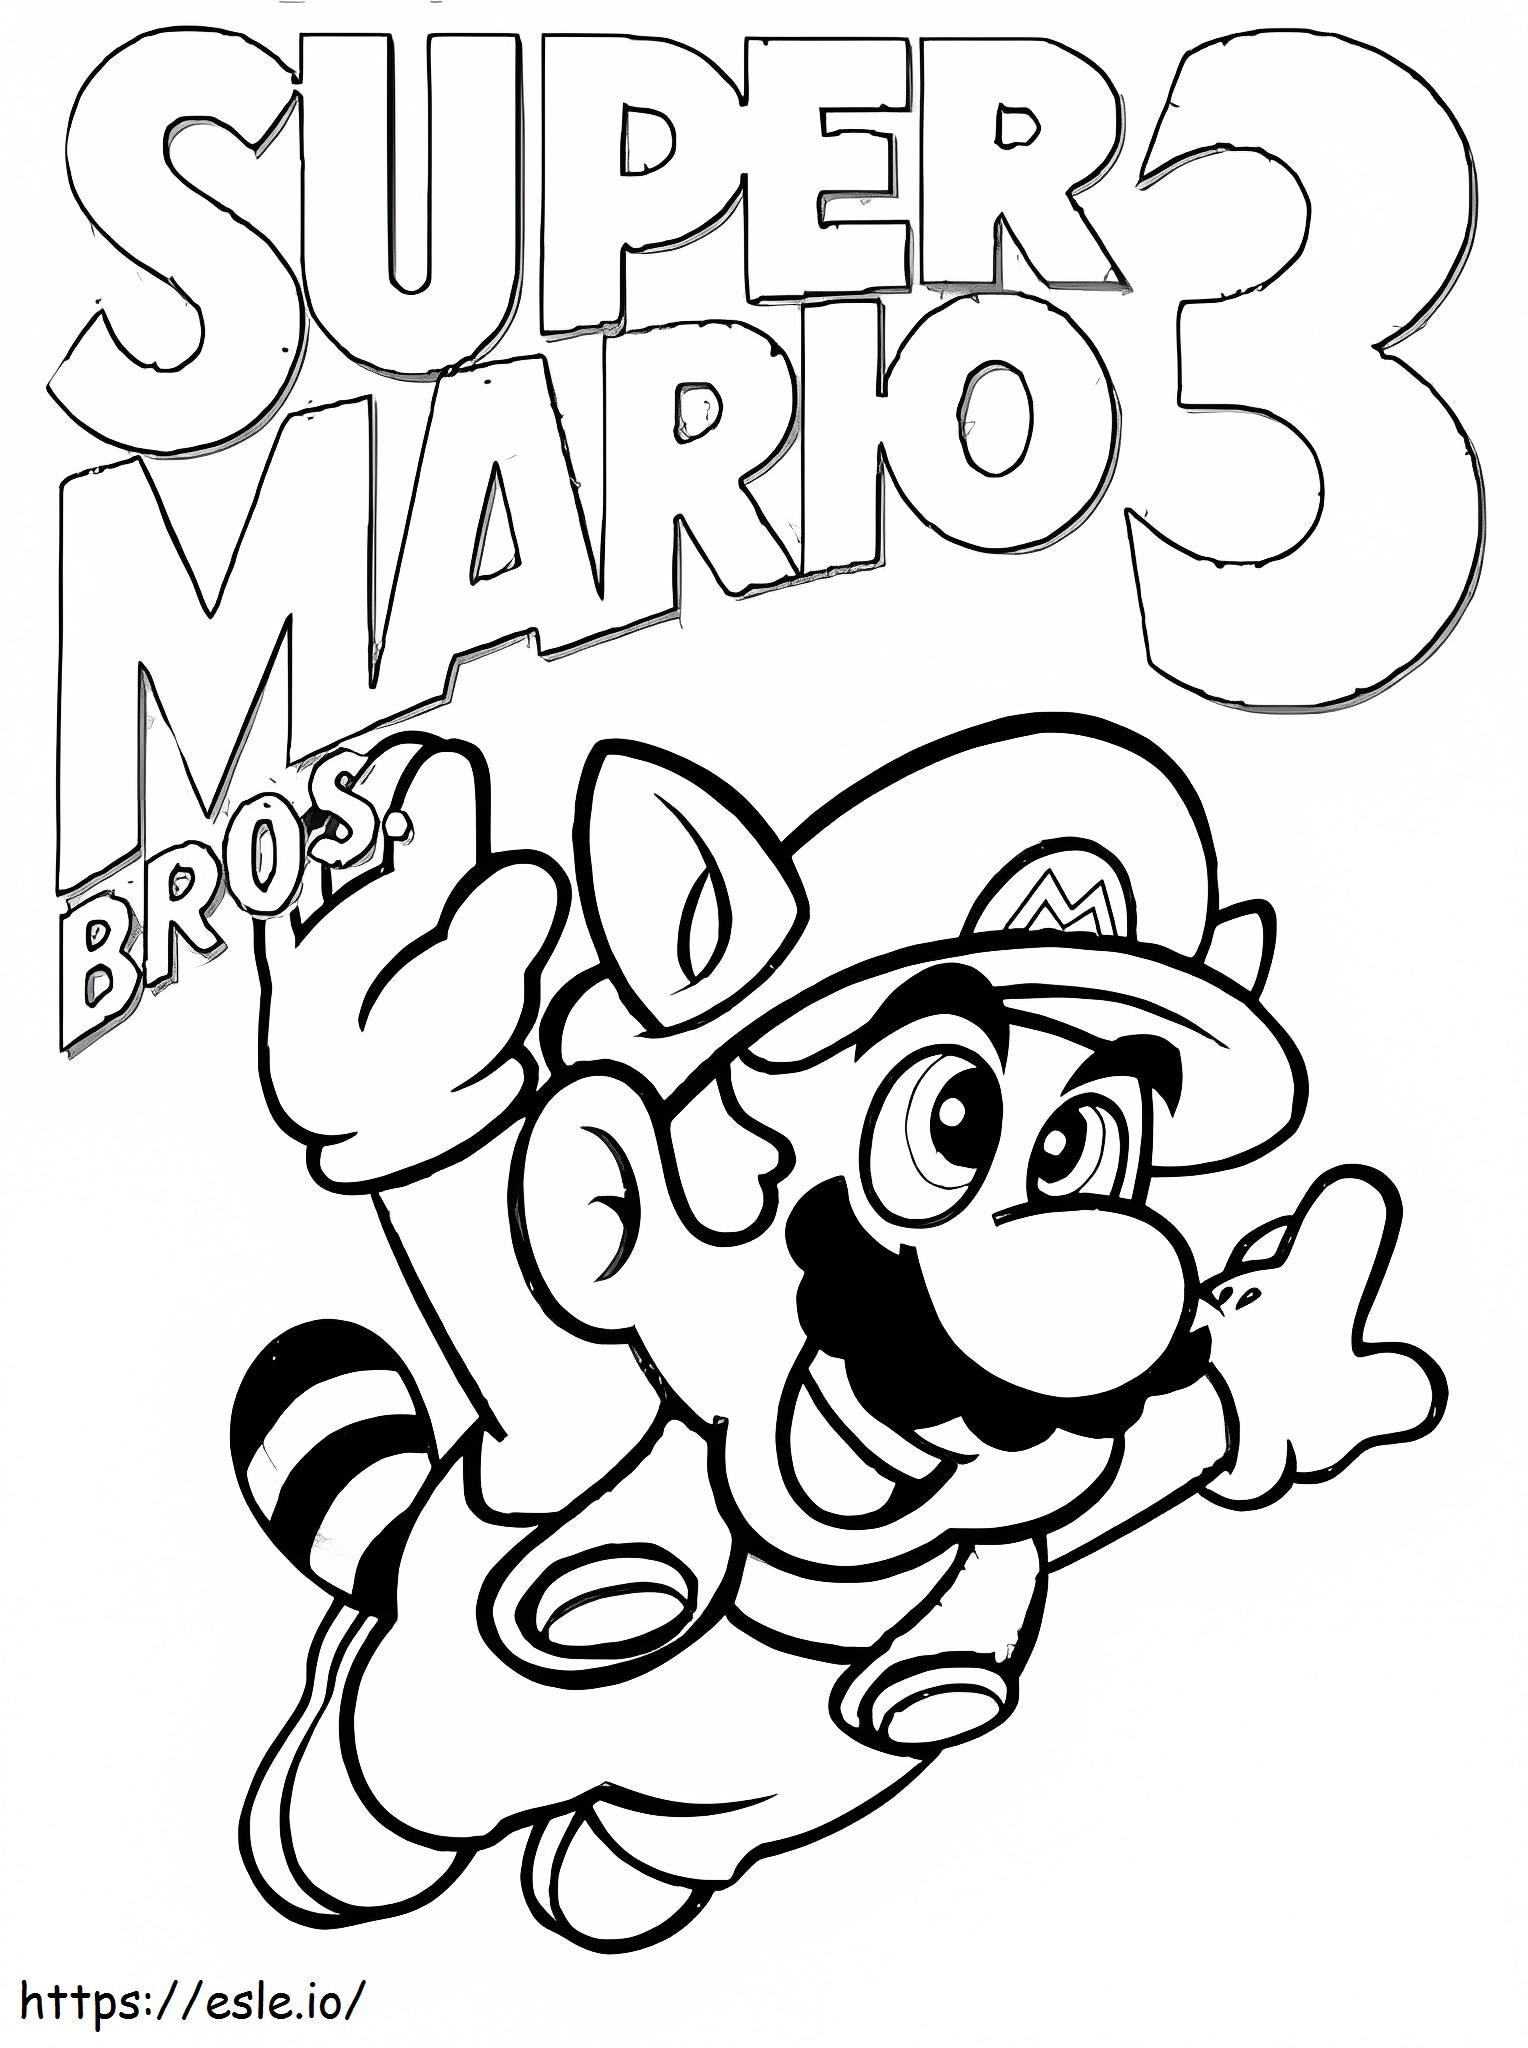 Super Mario 3 kleurplaat kleurplaat